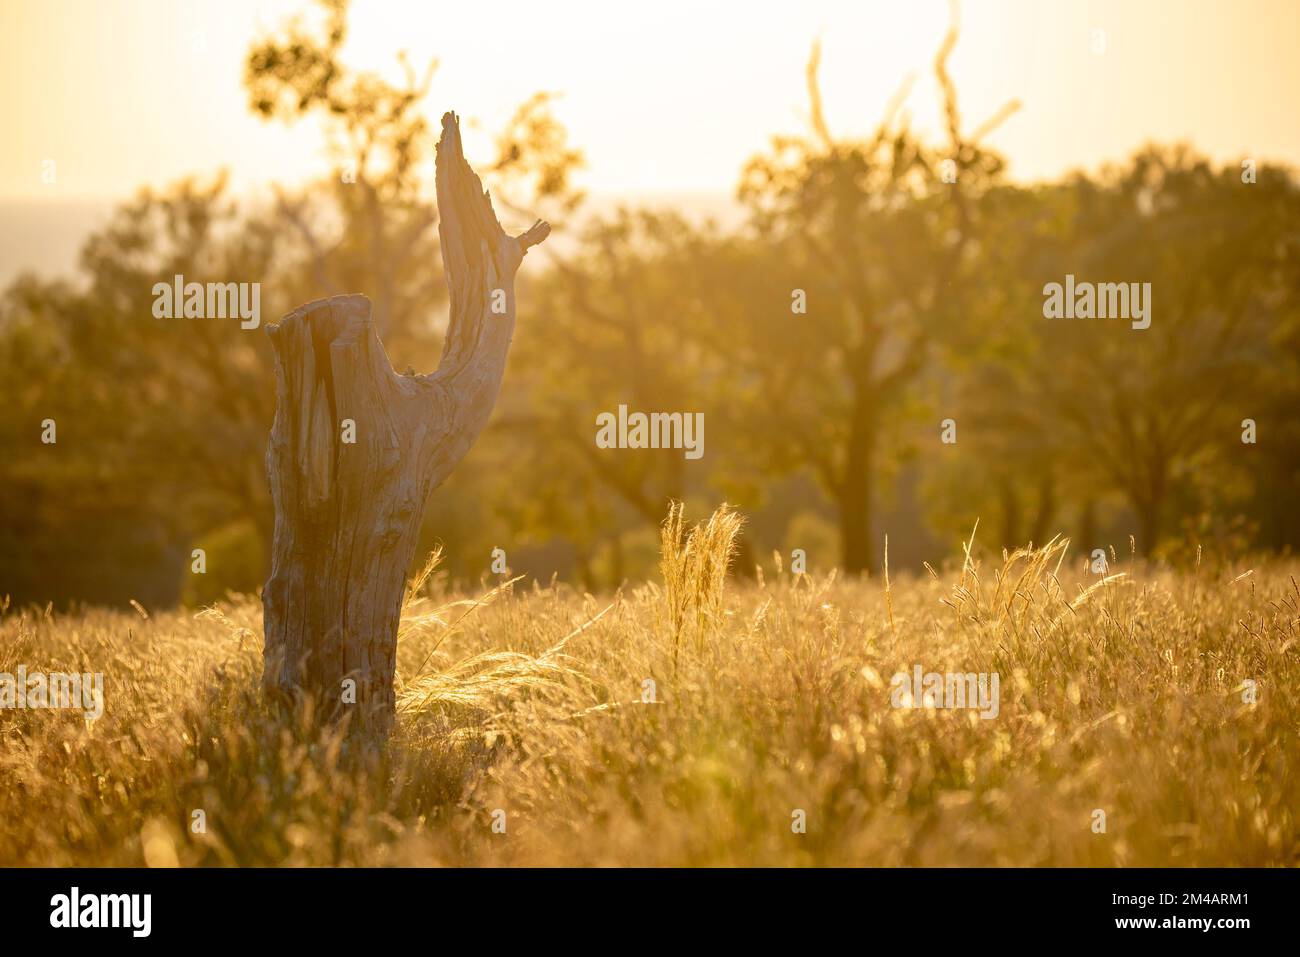 Der Stumpf eines toten Western Bloodwood Baumes (Corymbia terminalis) steht zwischen dem einheimischen Mitchell Grass (Astrebla lappacea) im goldenen Morgenlicht Stockfoto